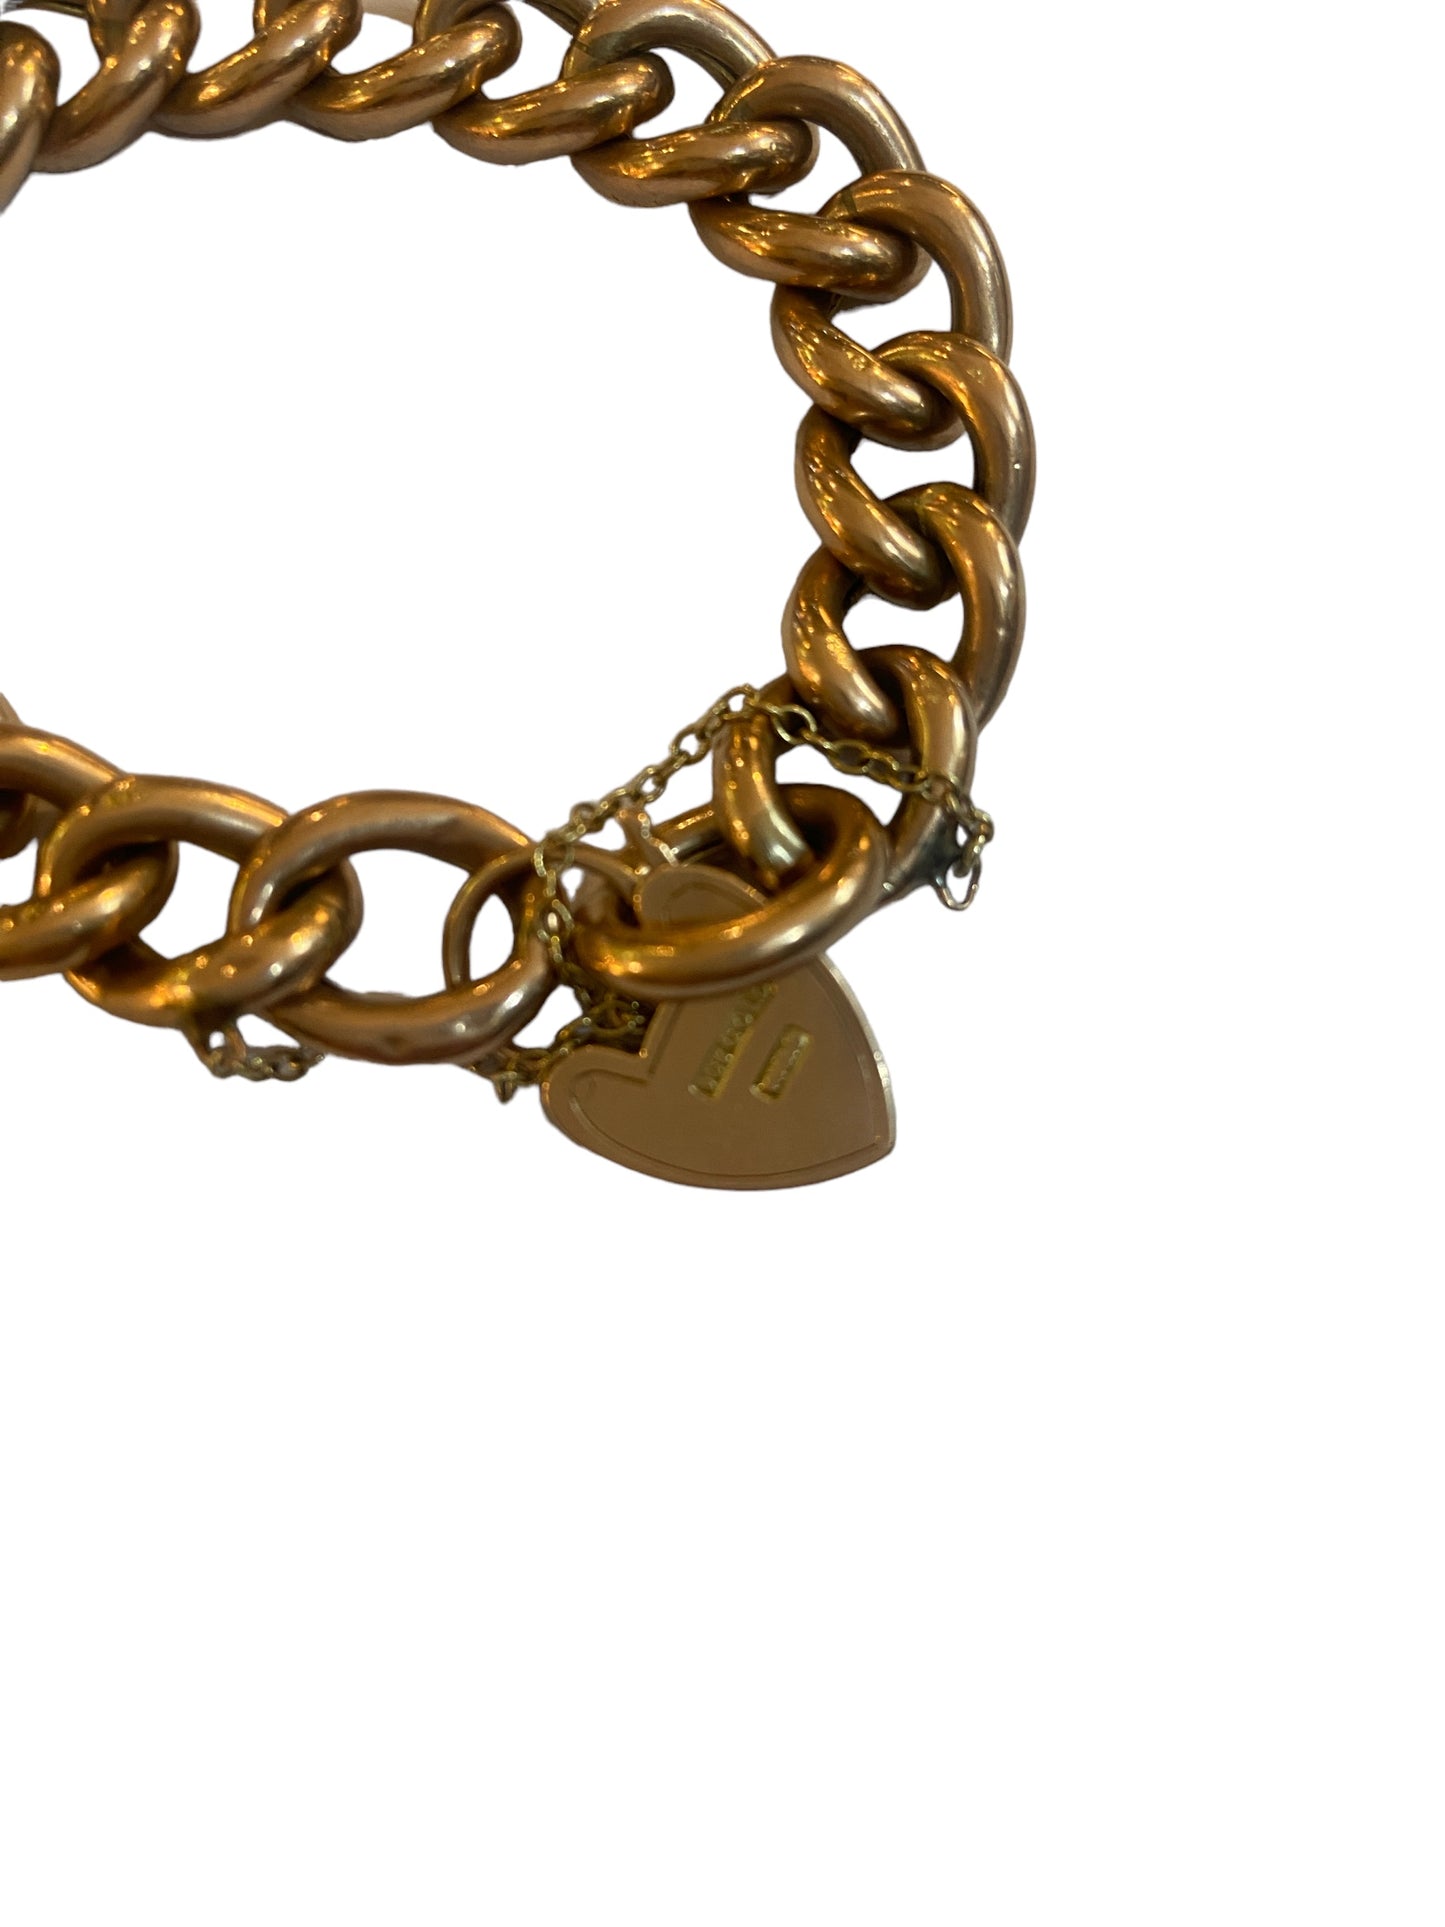 9ct vintage antique rose gold curb link bracelet 7 inches 19.5g